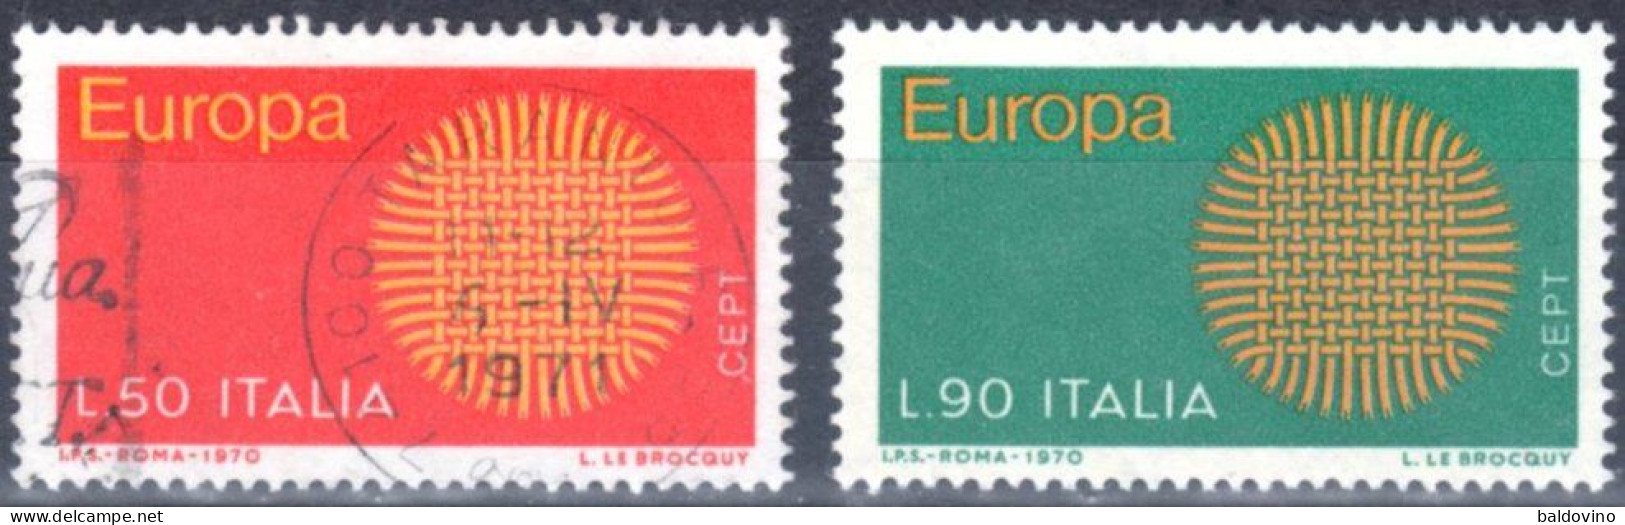 Italia 1970 Lotto 26 Valori (vedi Descrizione) - 1961-70: Used